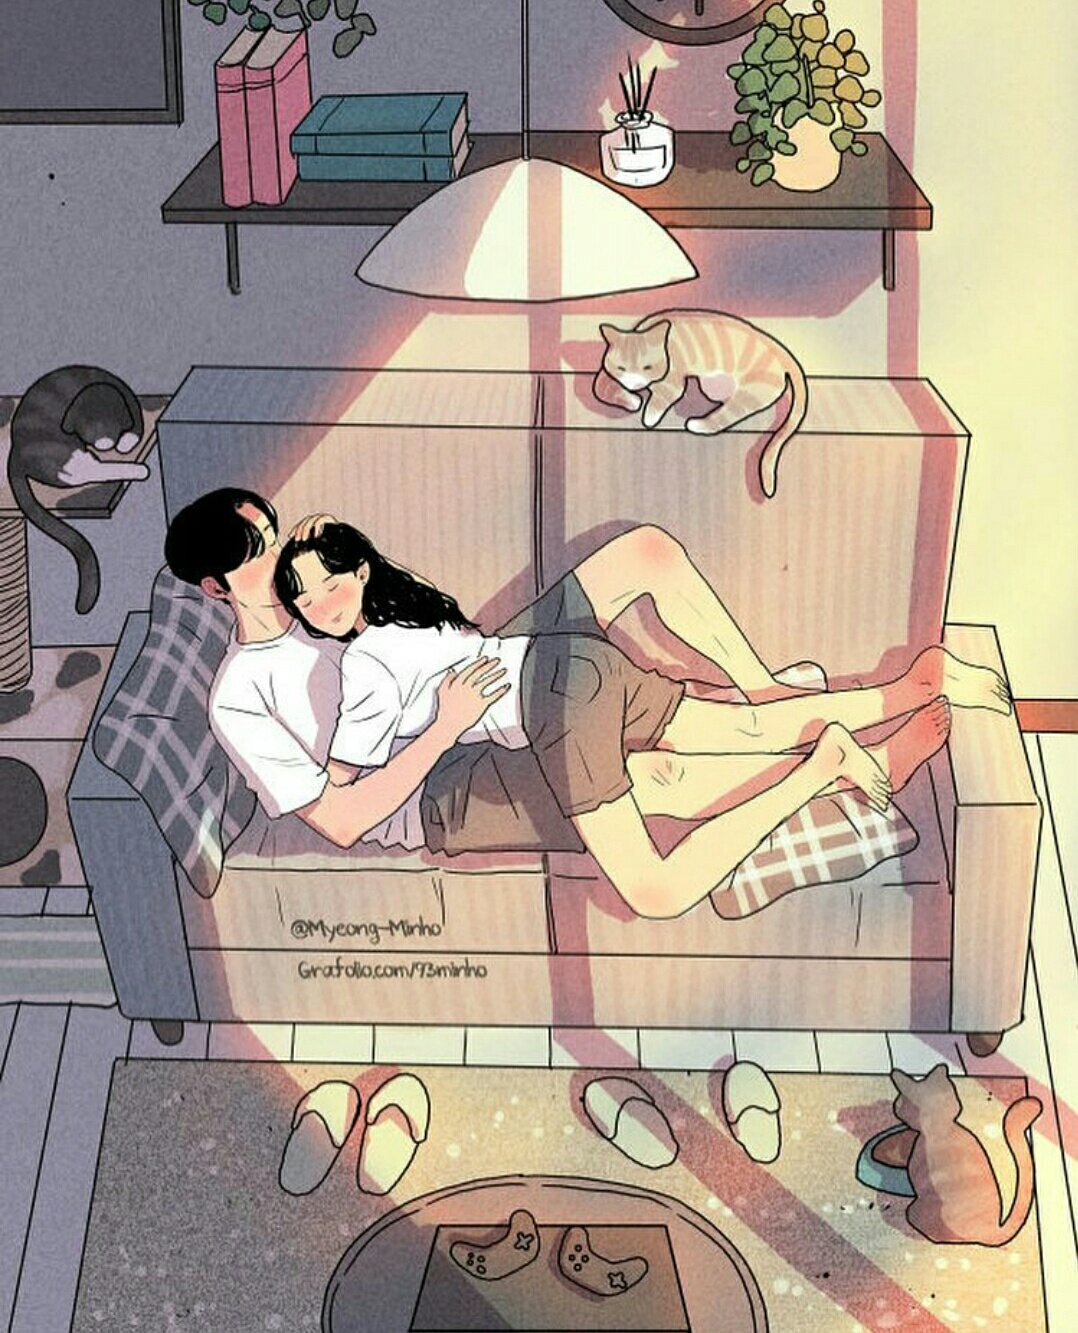 Сон жить вместе. Художника Myeong-Minho. Арт рисунок девушка и парень. Арты парочки на диване. Жить вместе арт.